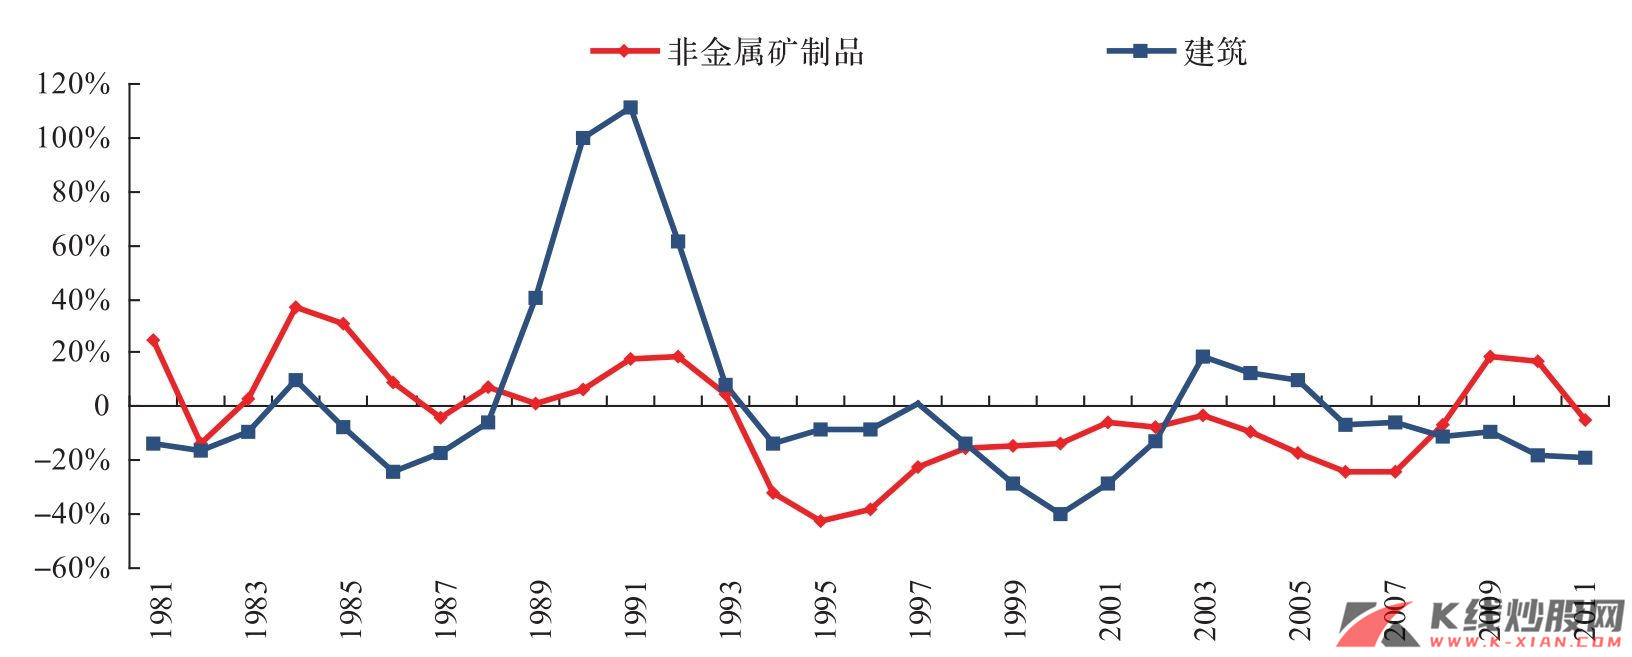 行业增加值增速减去GDP增速（三年累计）（韩国）——某些年增速会超过GDP增速的行业